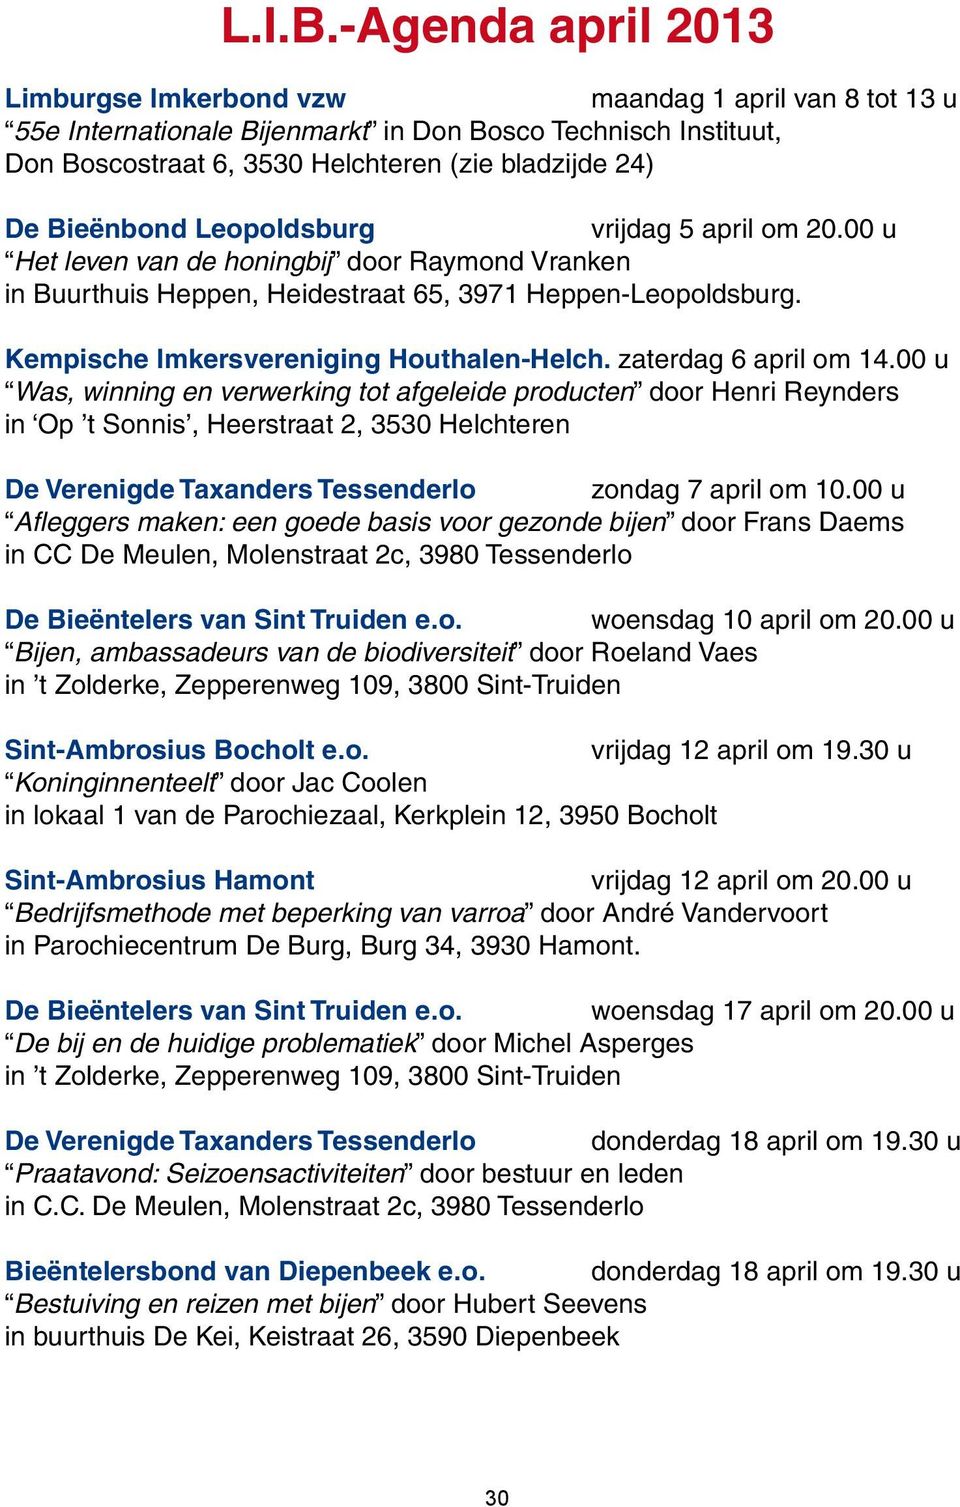 Bieënbond Leopoldsburg vrijdag 5 april om 20.00 u Het leven van de honingbij door Raymond Vranken in Buurthuis Heppen, Heidestraat 65, 3971 Heppen-Leopoldsburg.